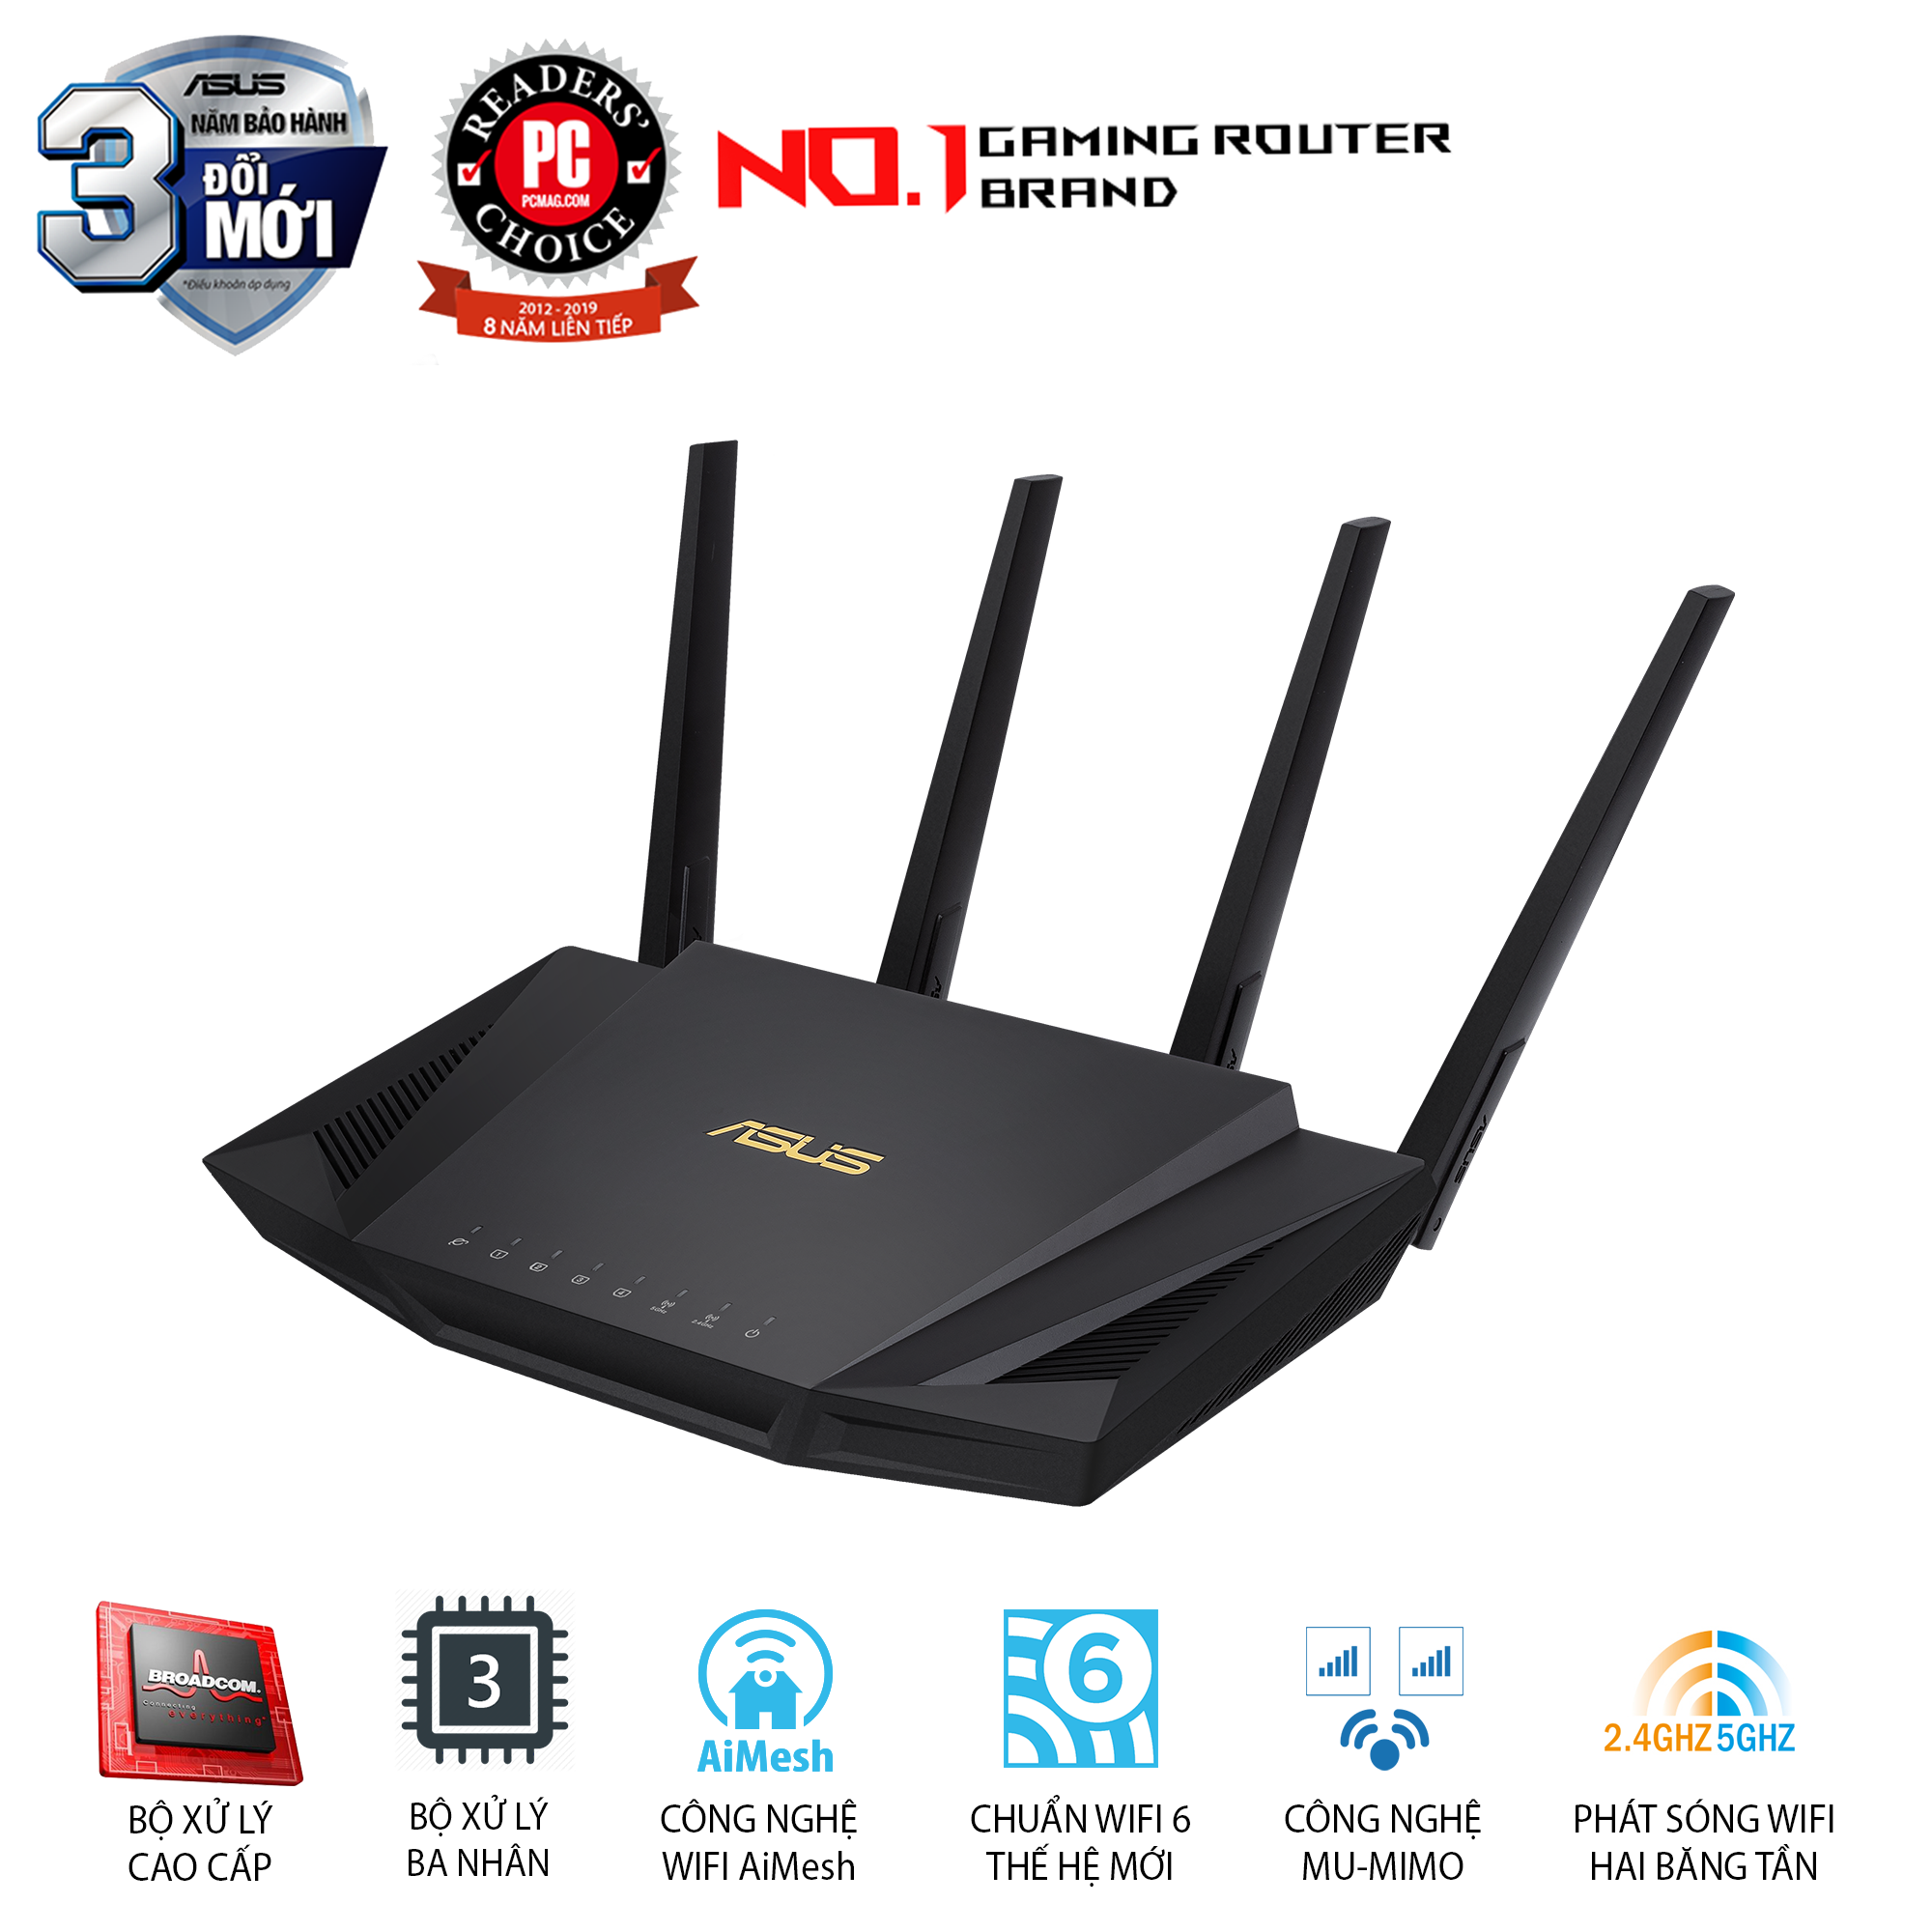 Gaming Router Wifi Asus RT-AX3000 Dual Band WiFi 6 (802.11ax) AX3000 Băng Tần Kép AiMesh AiProtection MU-MIMO OFDMA - Hàng Chính Hãng